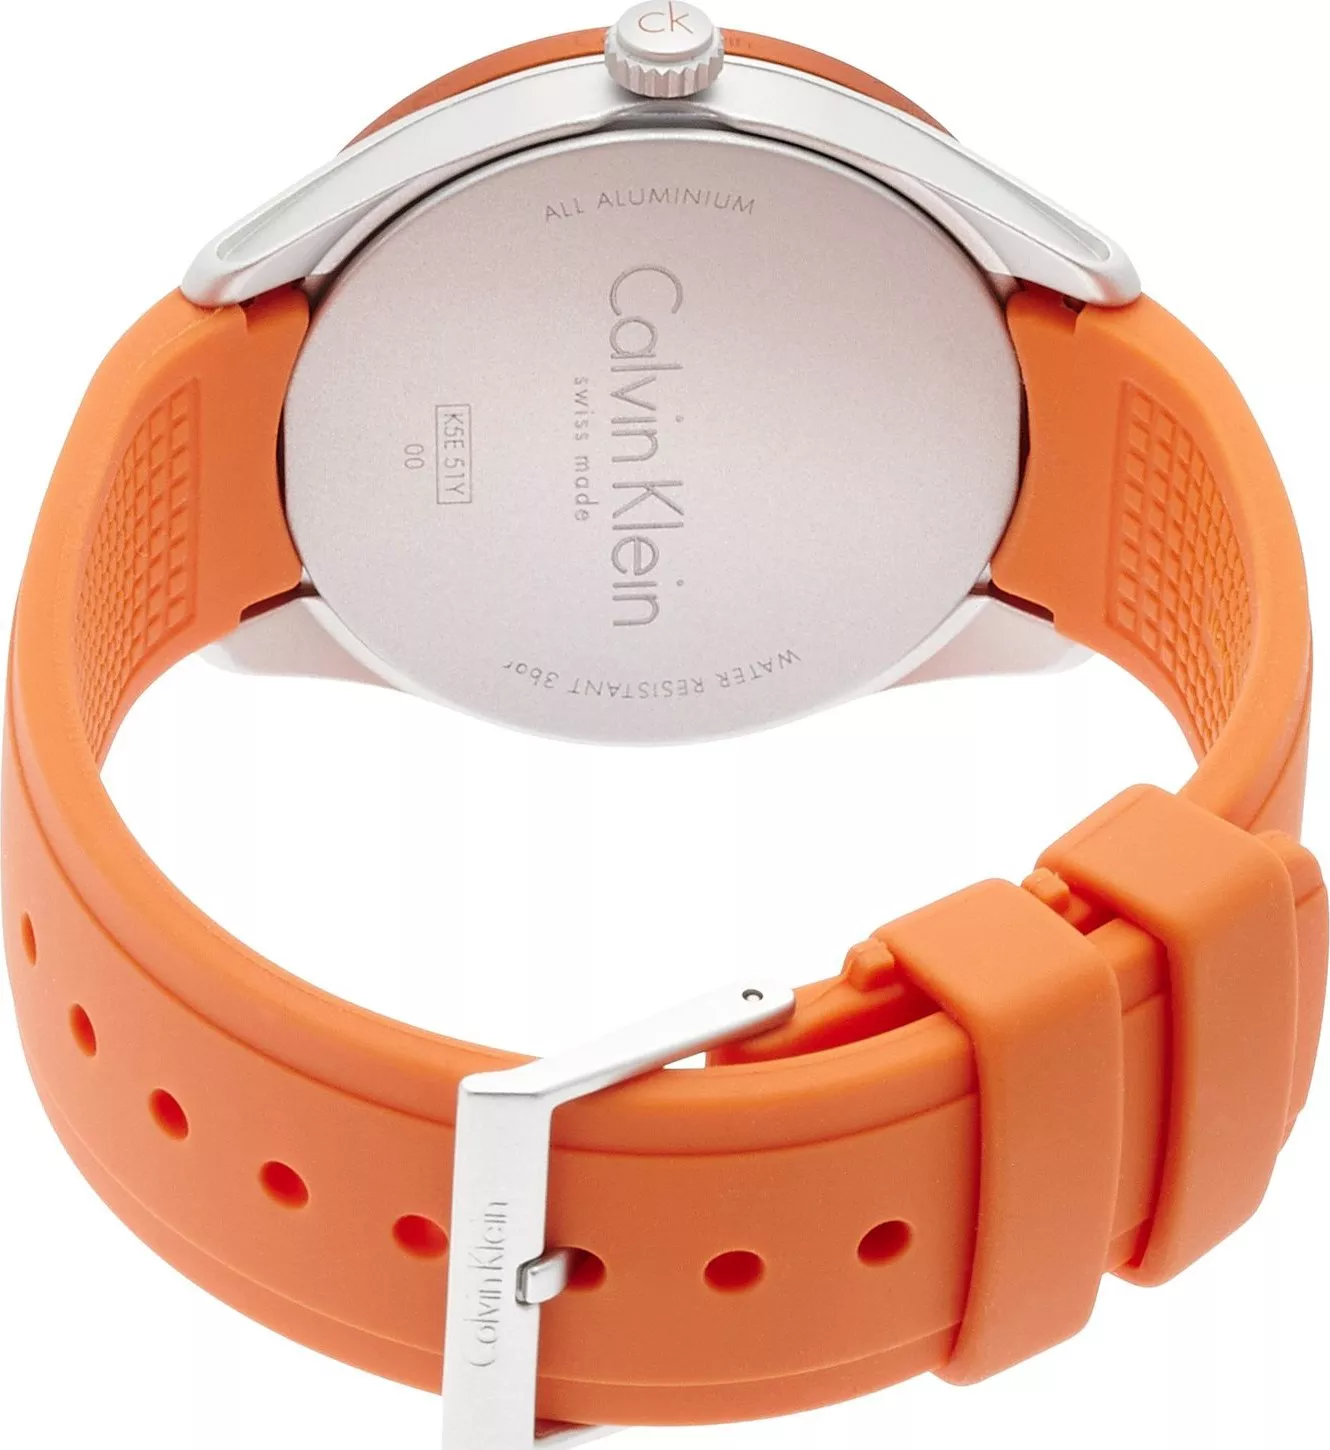 Calvin Klein Orange Silicone Strap Watch 40mm